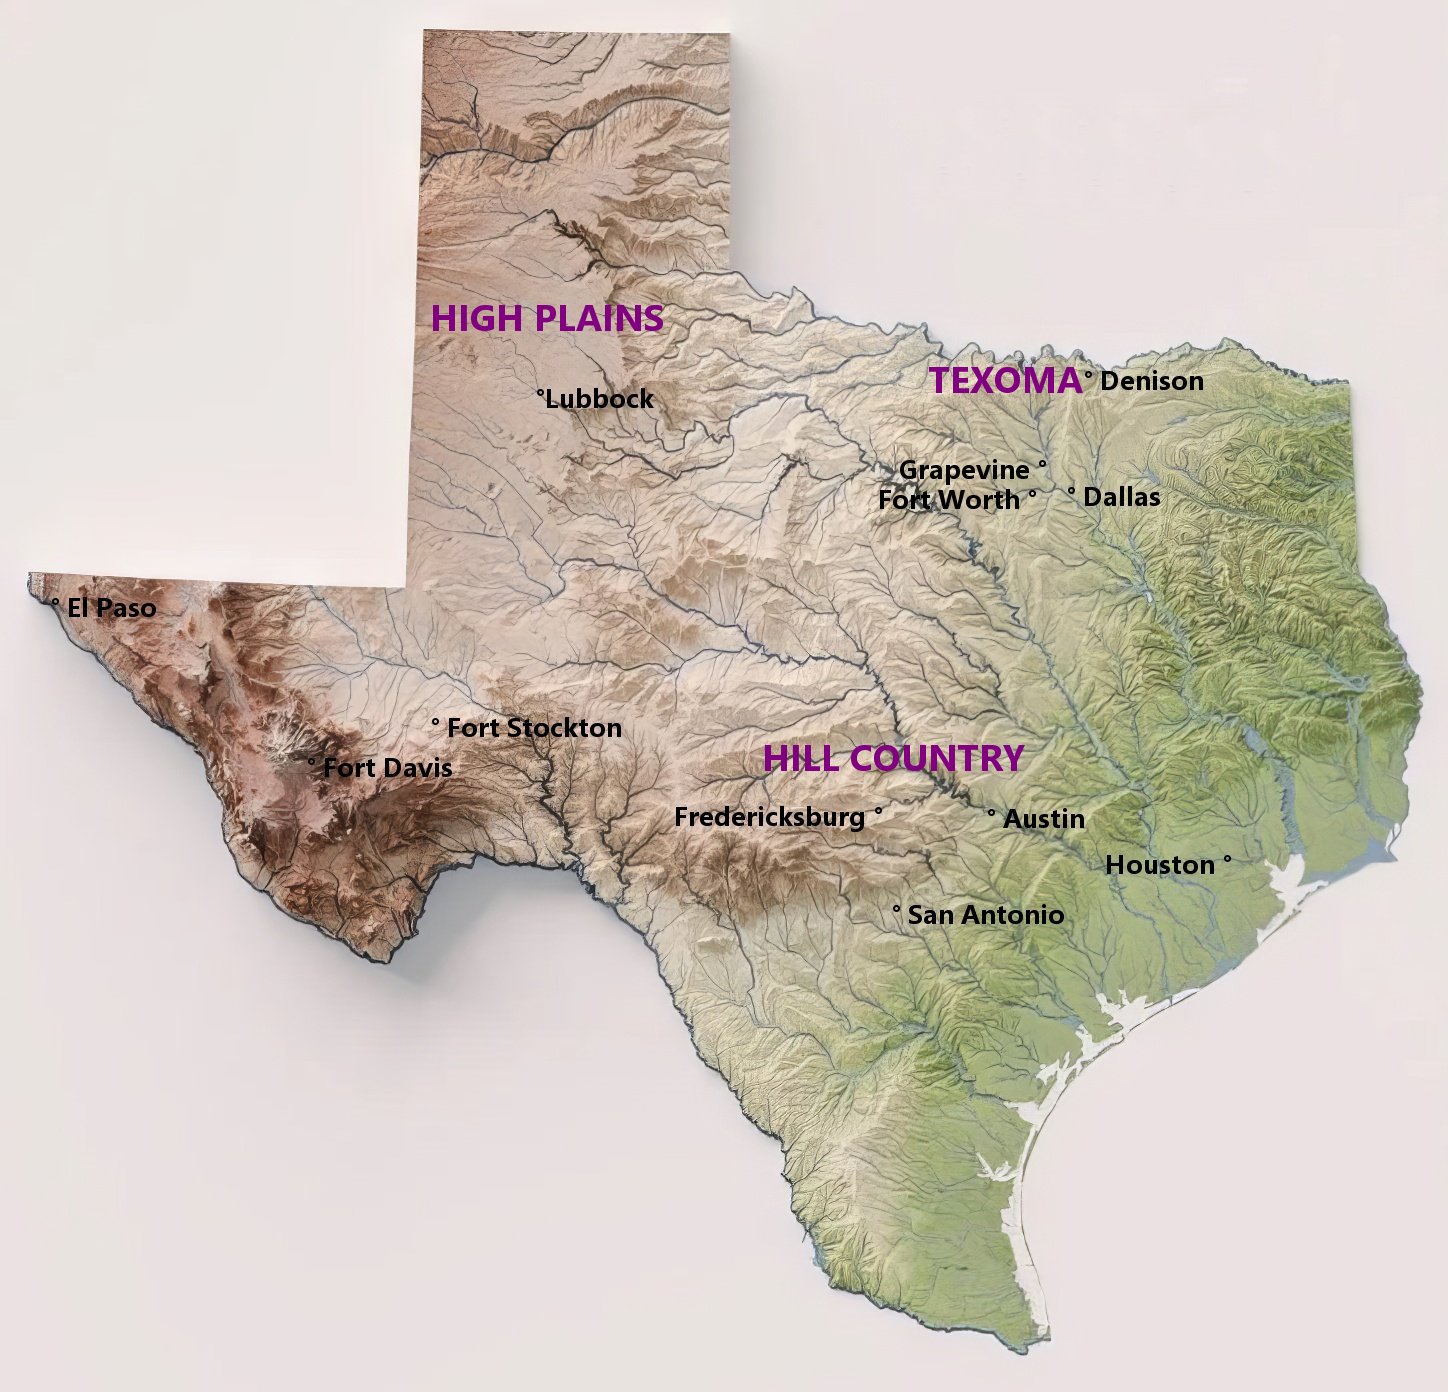 Texas wine map></p>
<p align=